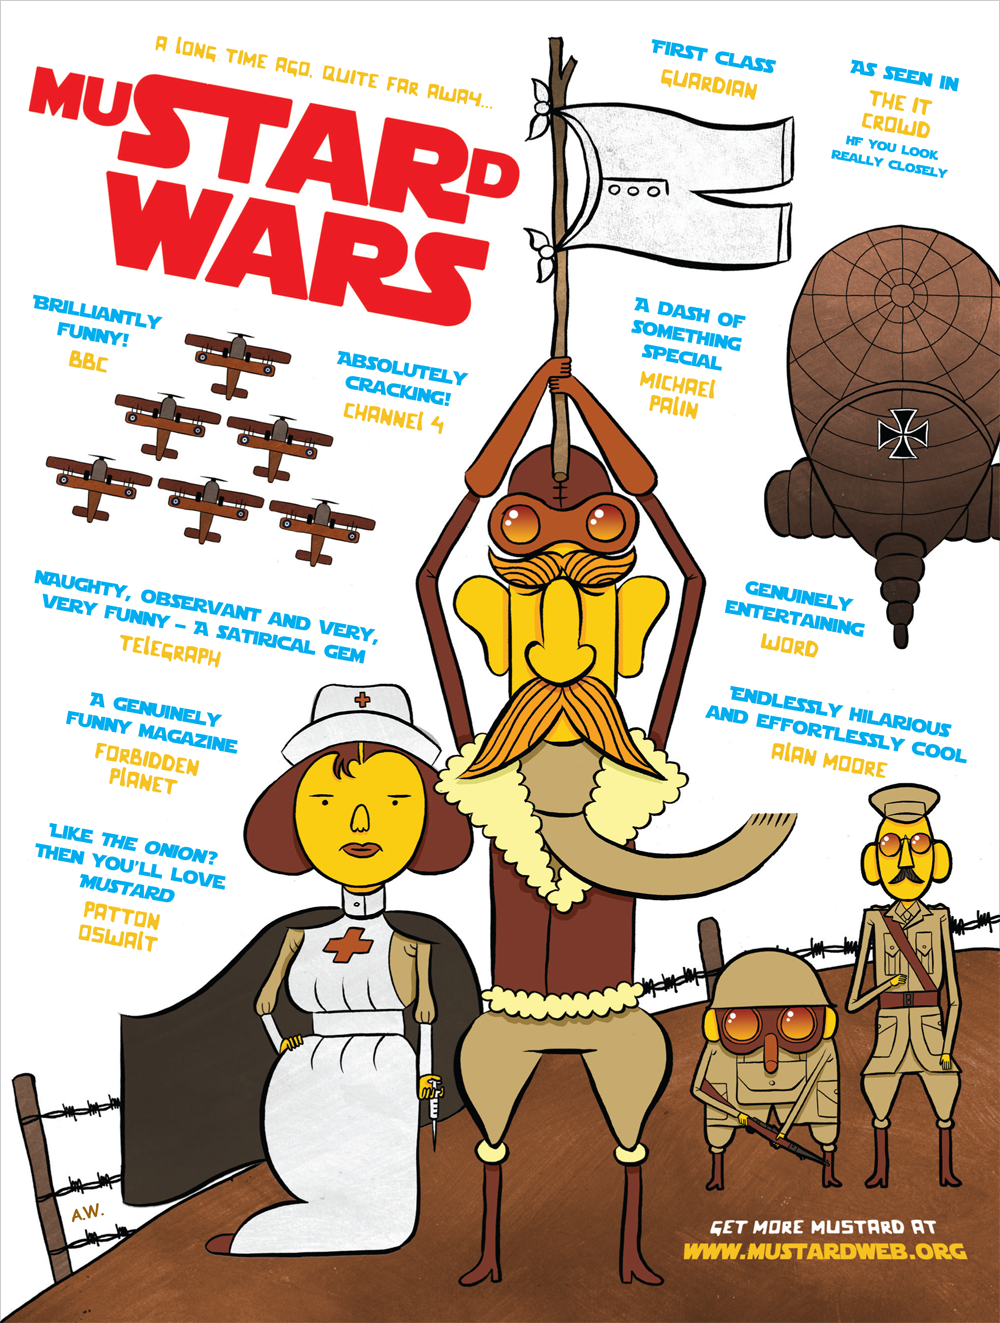 MuSTARd WARS - Mustard Star Wars